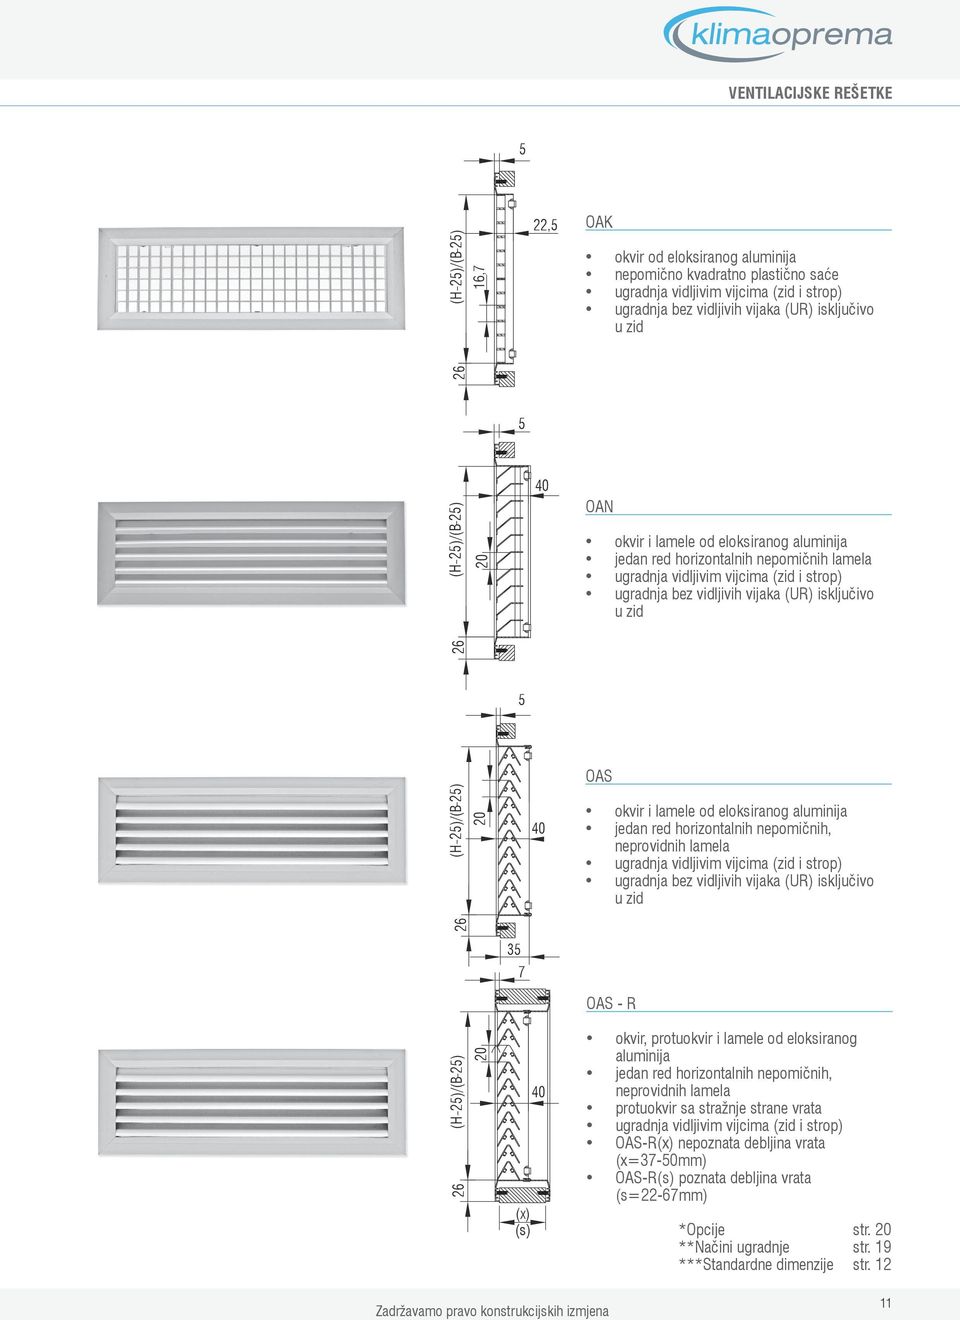 eloksiranog aluminija jedan red horizontalnih nepomičnih, neprovidnih lamela ugradnja vidljivim vijcima (zid i strop) ugradnja bez vidljivih vijaka (UR) isključivo u zid 7 ()/() (x) (s) OAS R okvir,